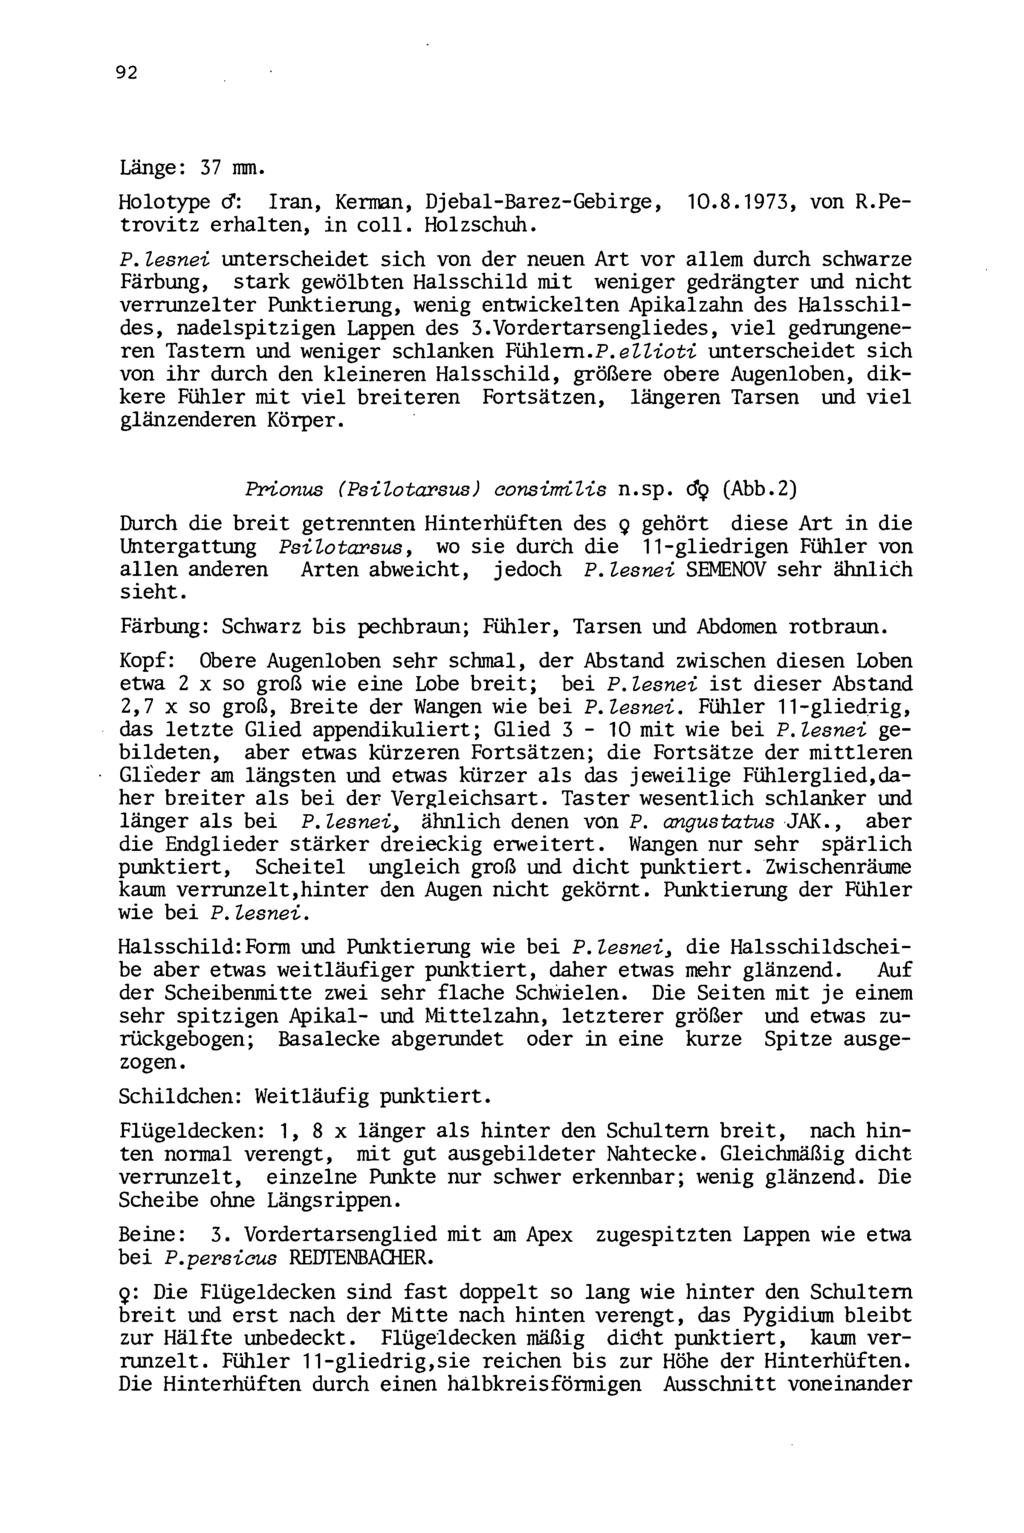 92 Wiener Coleopterologenverein (WCV), download unter www.biologiezentrum.at Länge: 37 mm. Holotype cf: Iran, Kerman, Djebal-Barez-Gebirge, 10.8.1973, von R.Petrovitz erhalten, in coll. Holzschuh. P.